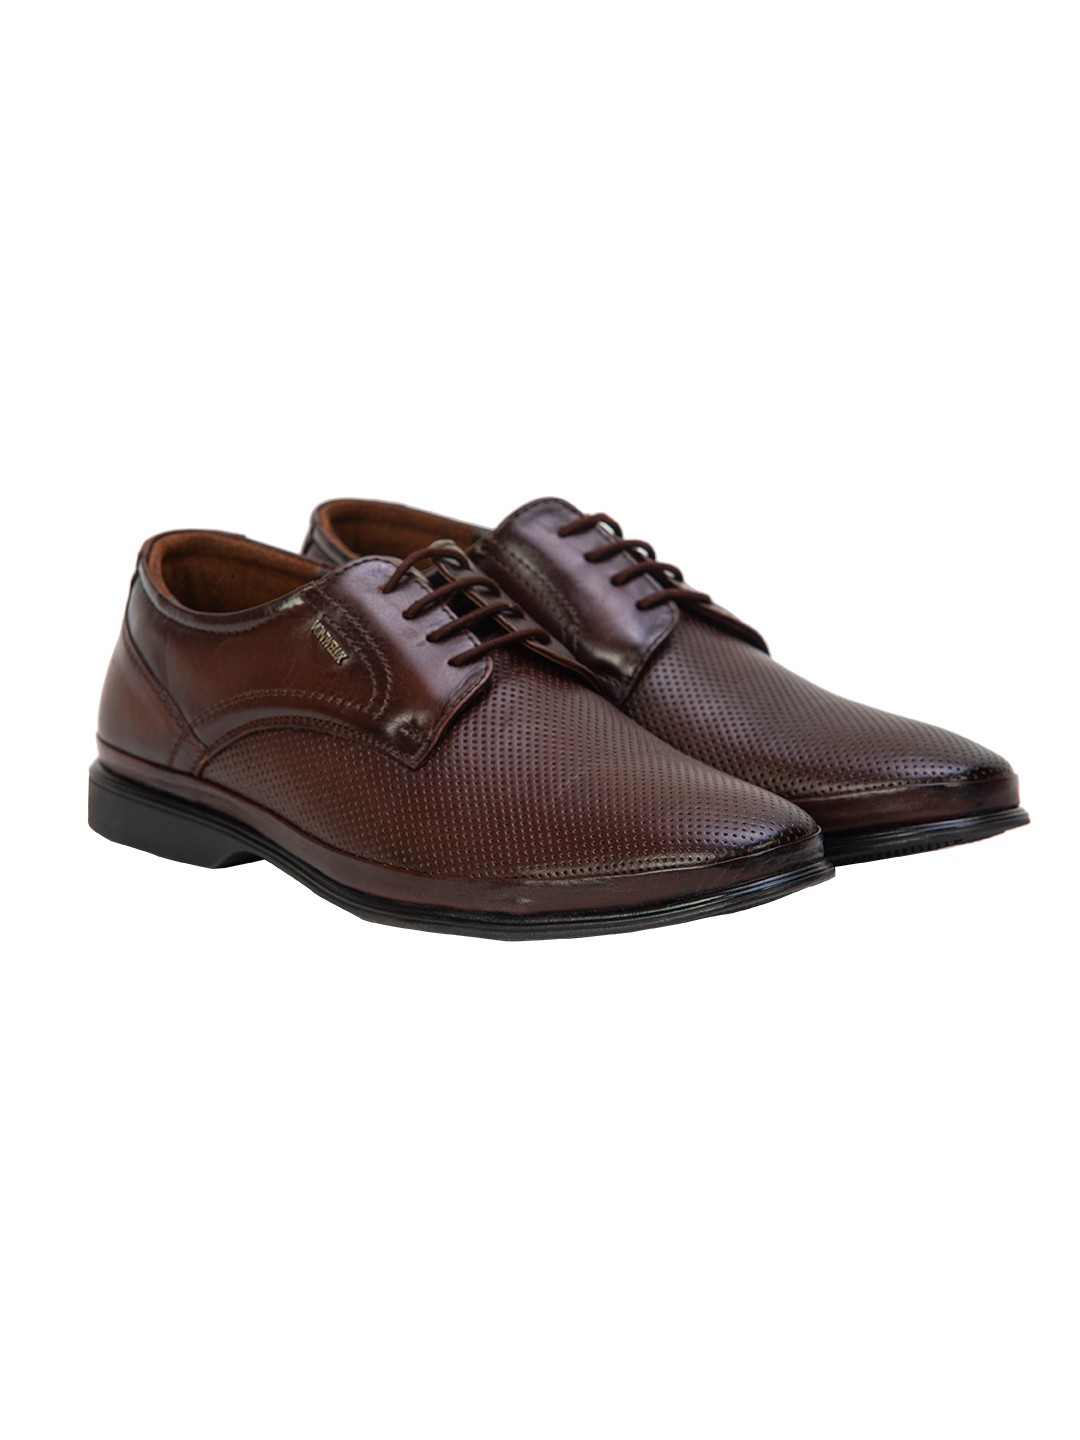 Buy Von Wellx Germany Comfort Coen Brown Shoes Online in Dehradun